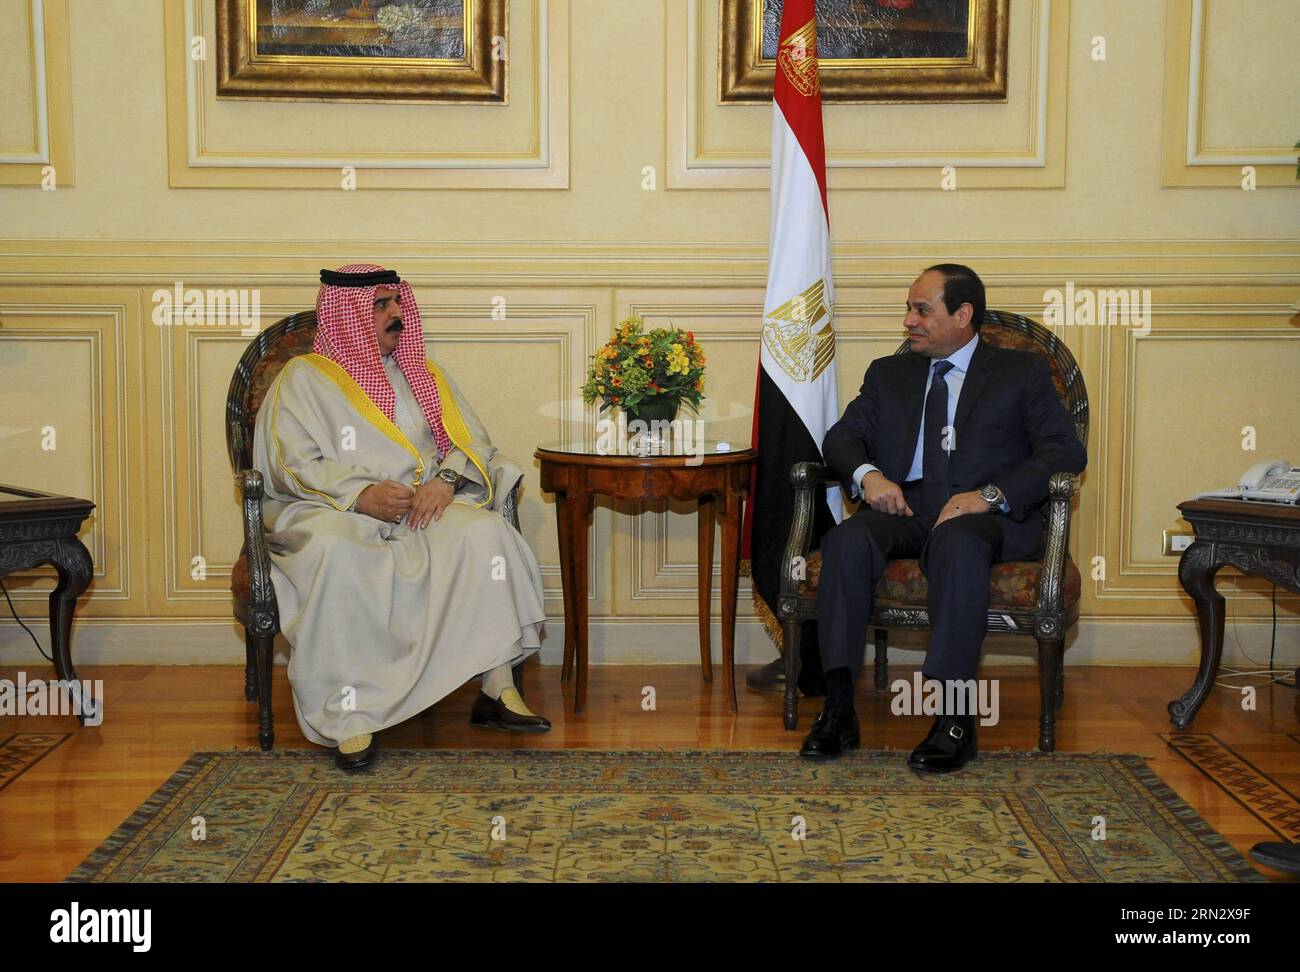 (150327) -- SHARM EL-SHEIKH, 27. März 2015 -- das Foto der staatlichen ägyptischen Nachrichtenagentur zeigt das Treffen des ägyptischen Präsidenten Abdel-Fattah al-Sisi (R) mit dem jemenitischen Präsidenten Abd-Rabbo Mansour Hadi in Sharm El-Sheikh, Ägypten, 27. März 2015. Der jemenitische Präsident Abd-Rabbo Mansour Hadi kam am Freitag in Scharm El-Scheich an, um an einem zweitägigen Gipfel der Arabischen Liga teilzunehmen, berichtete das ägyptische Staatsfernsehen. ÄGYPTEN-ARABISCHE LIGA-GIPFEL-JEMEN-HADI-ANKUNFT MENA PUBLICATIONxNOTxINxCHN Sharm El Sheikh März 27 2015 das Handout-Foto der Ägyptischen Staatsnachrichtenagentur zeigt den ägyptischen Präsidenten Abdel Fattah Al Sisi Stockfoto